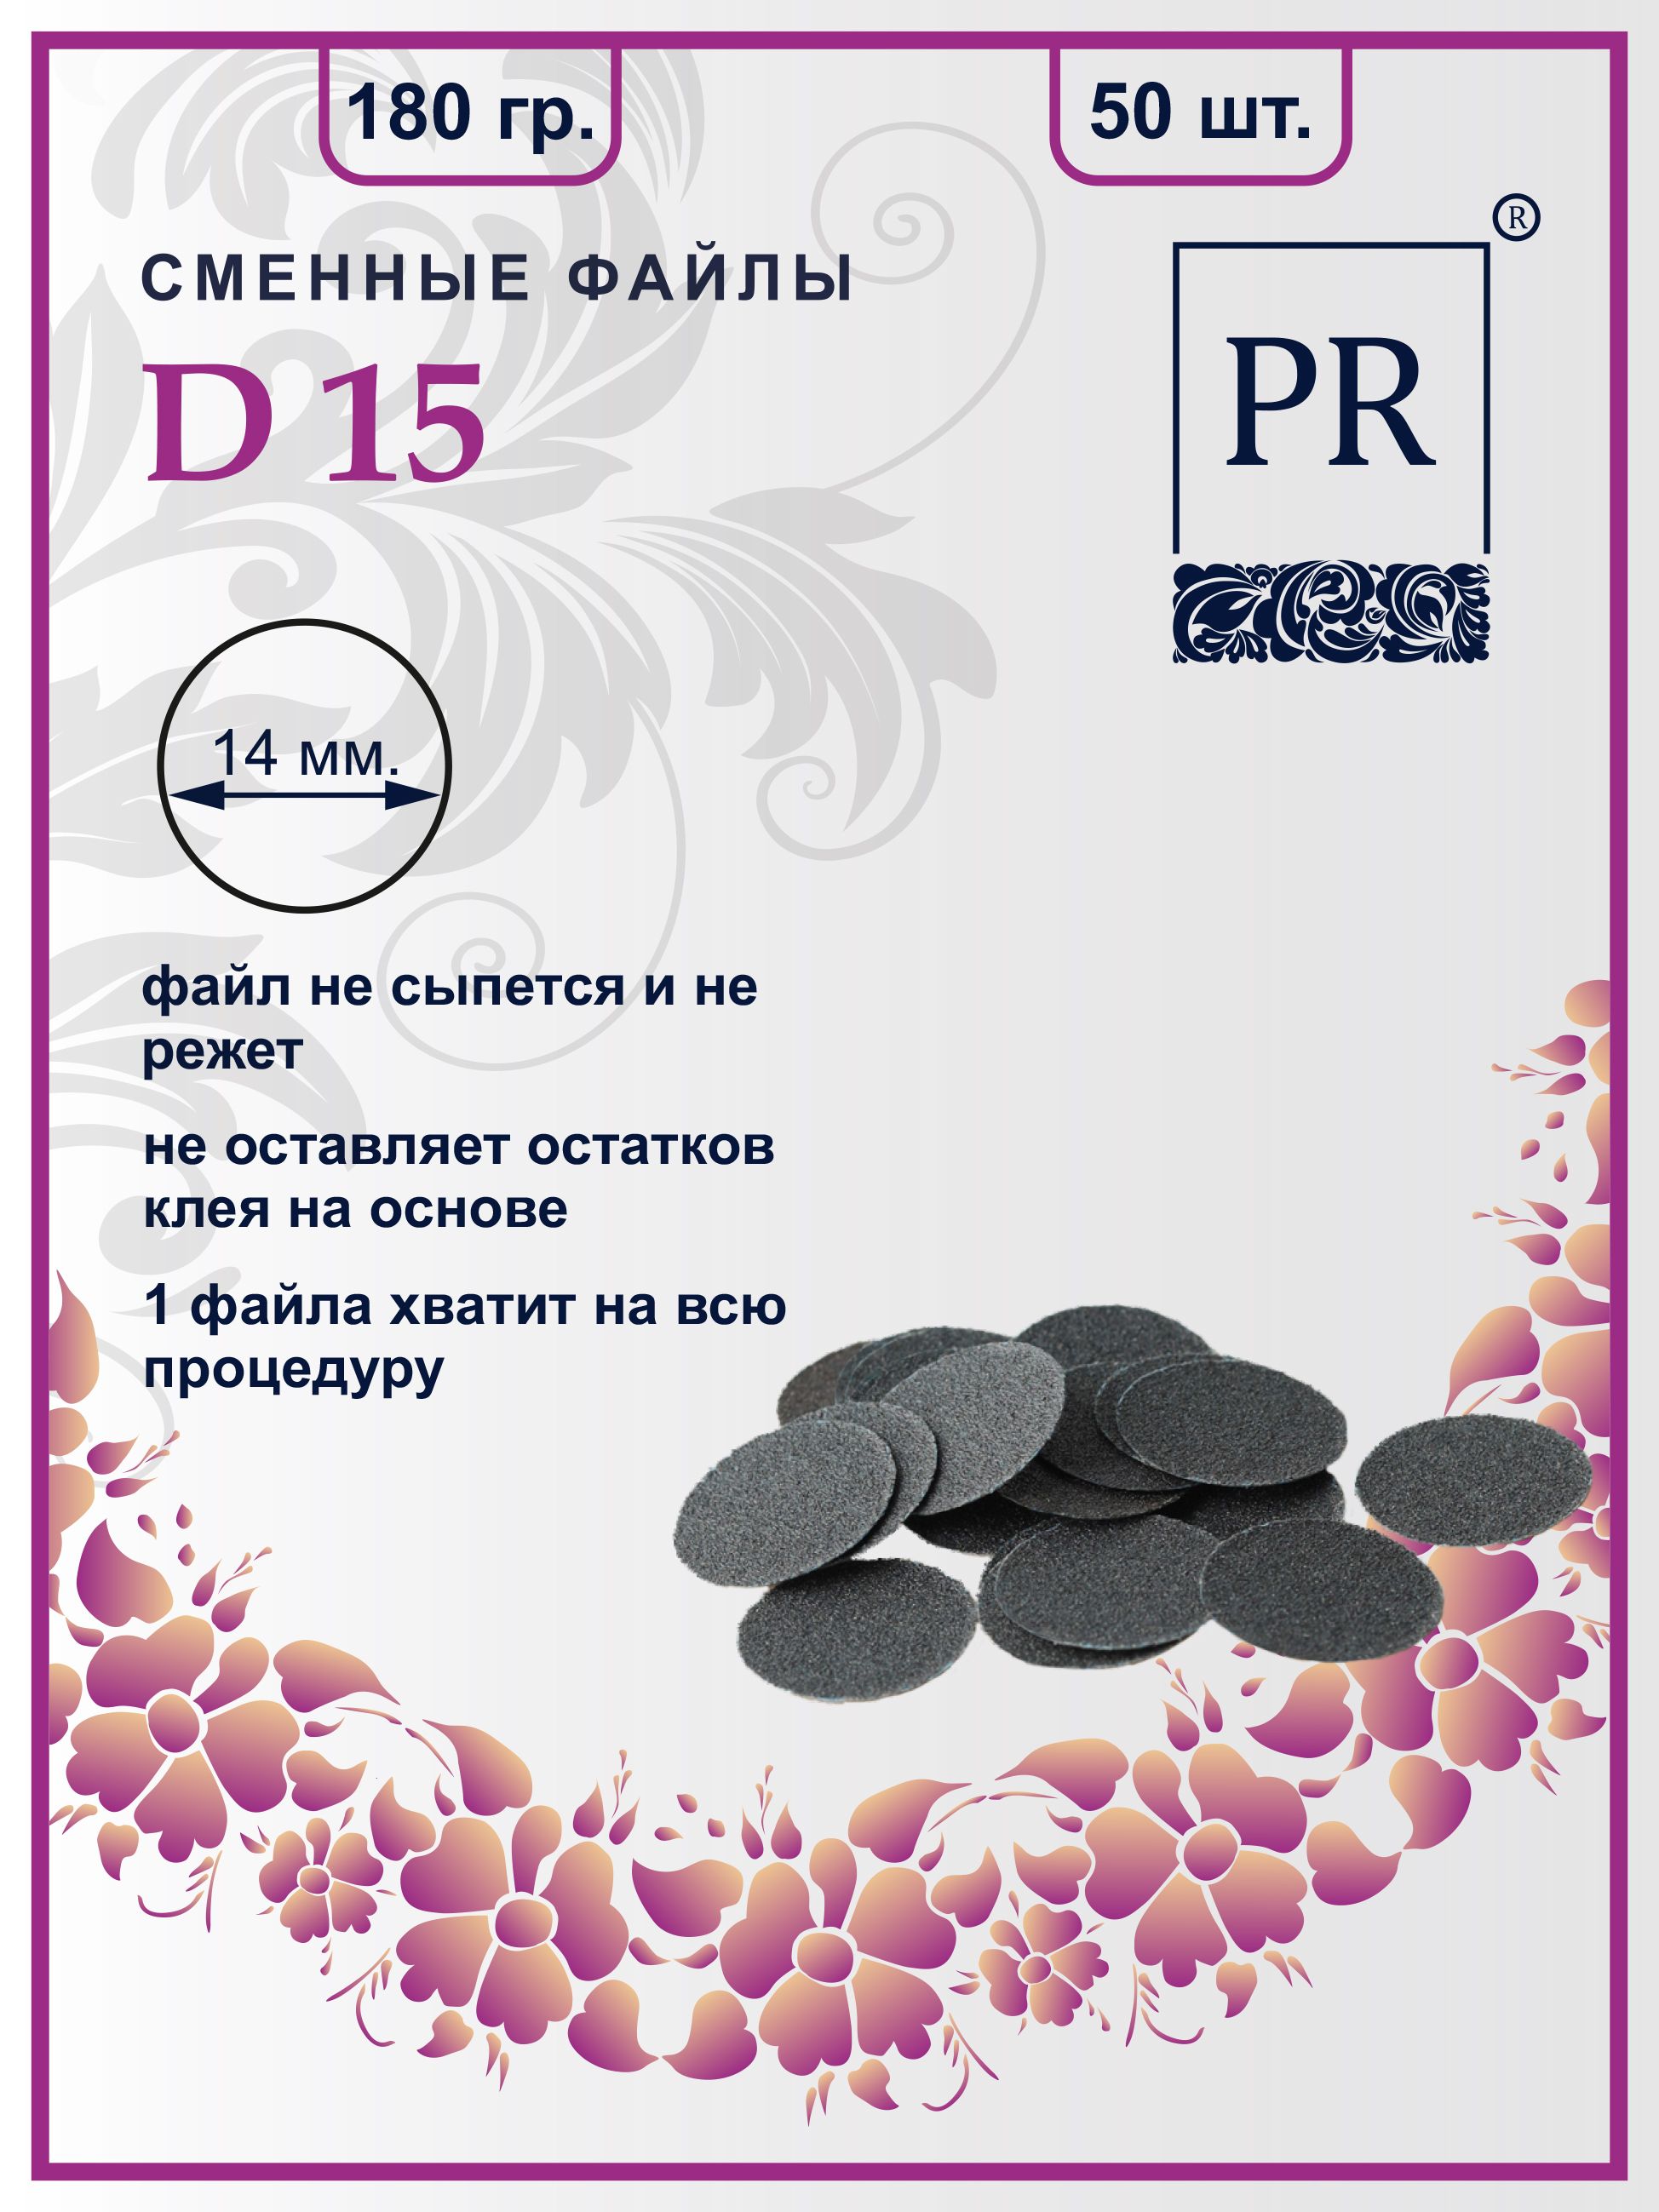 Сменные файлы Pilochki Russia диски для педикюра для диска S 180 грит 50 штук диск для аппаратного педикюра d20 со сменными файлами